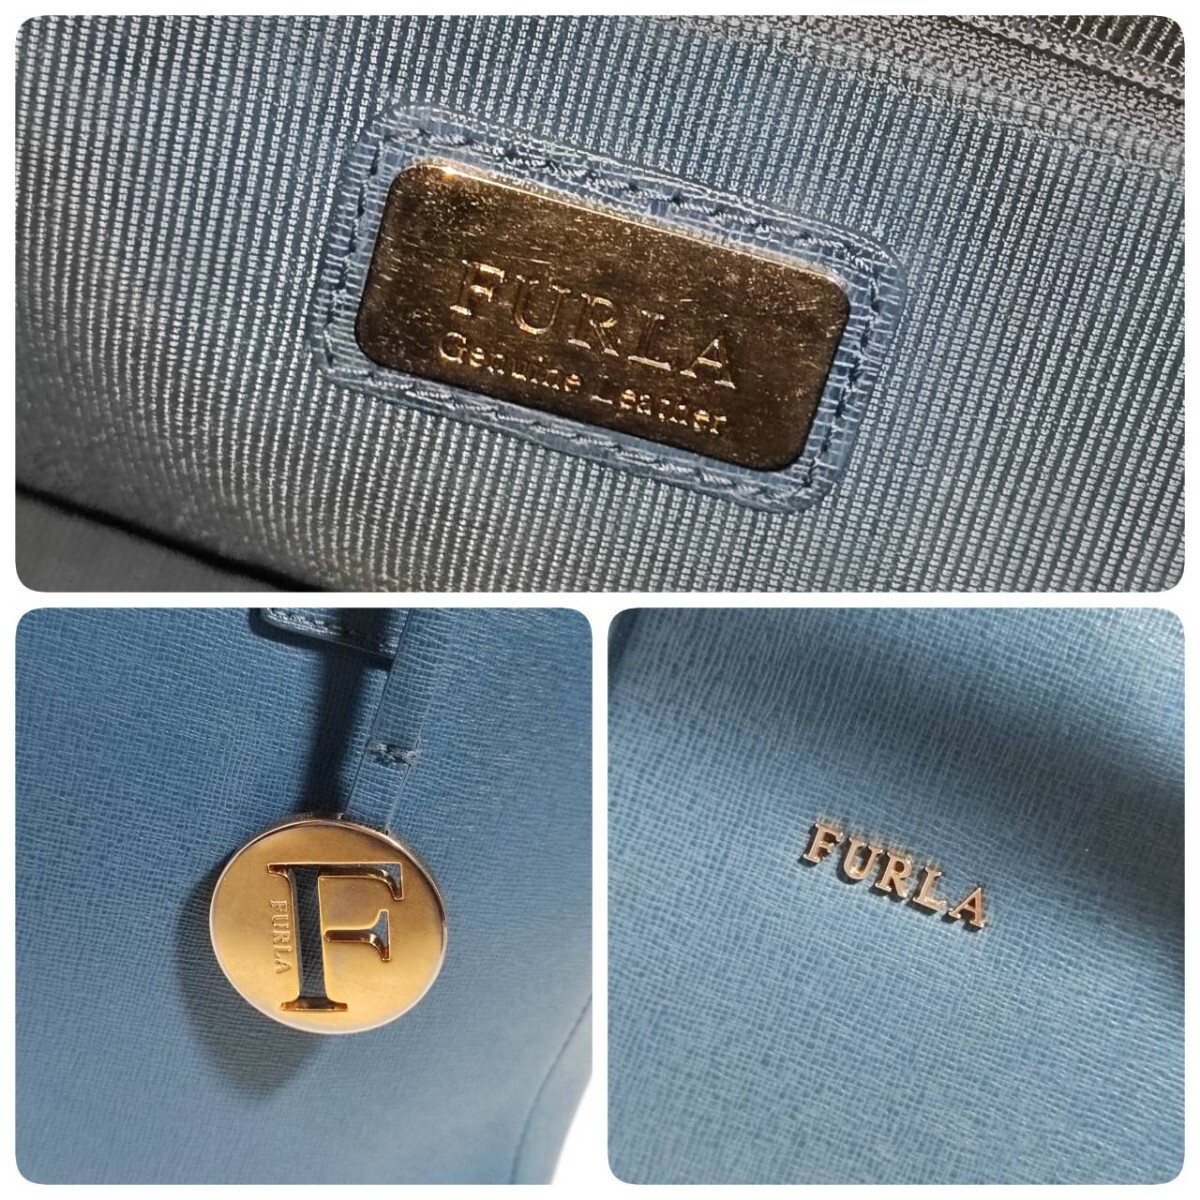 美品 希少色 フルラ トートバッグ 本革 サフィアーノ レザー FURLA ブルー 青 ビジネス ブリーフケース メンズ 大容量 仕事 A4可 書類鞄 の画像10